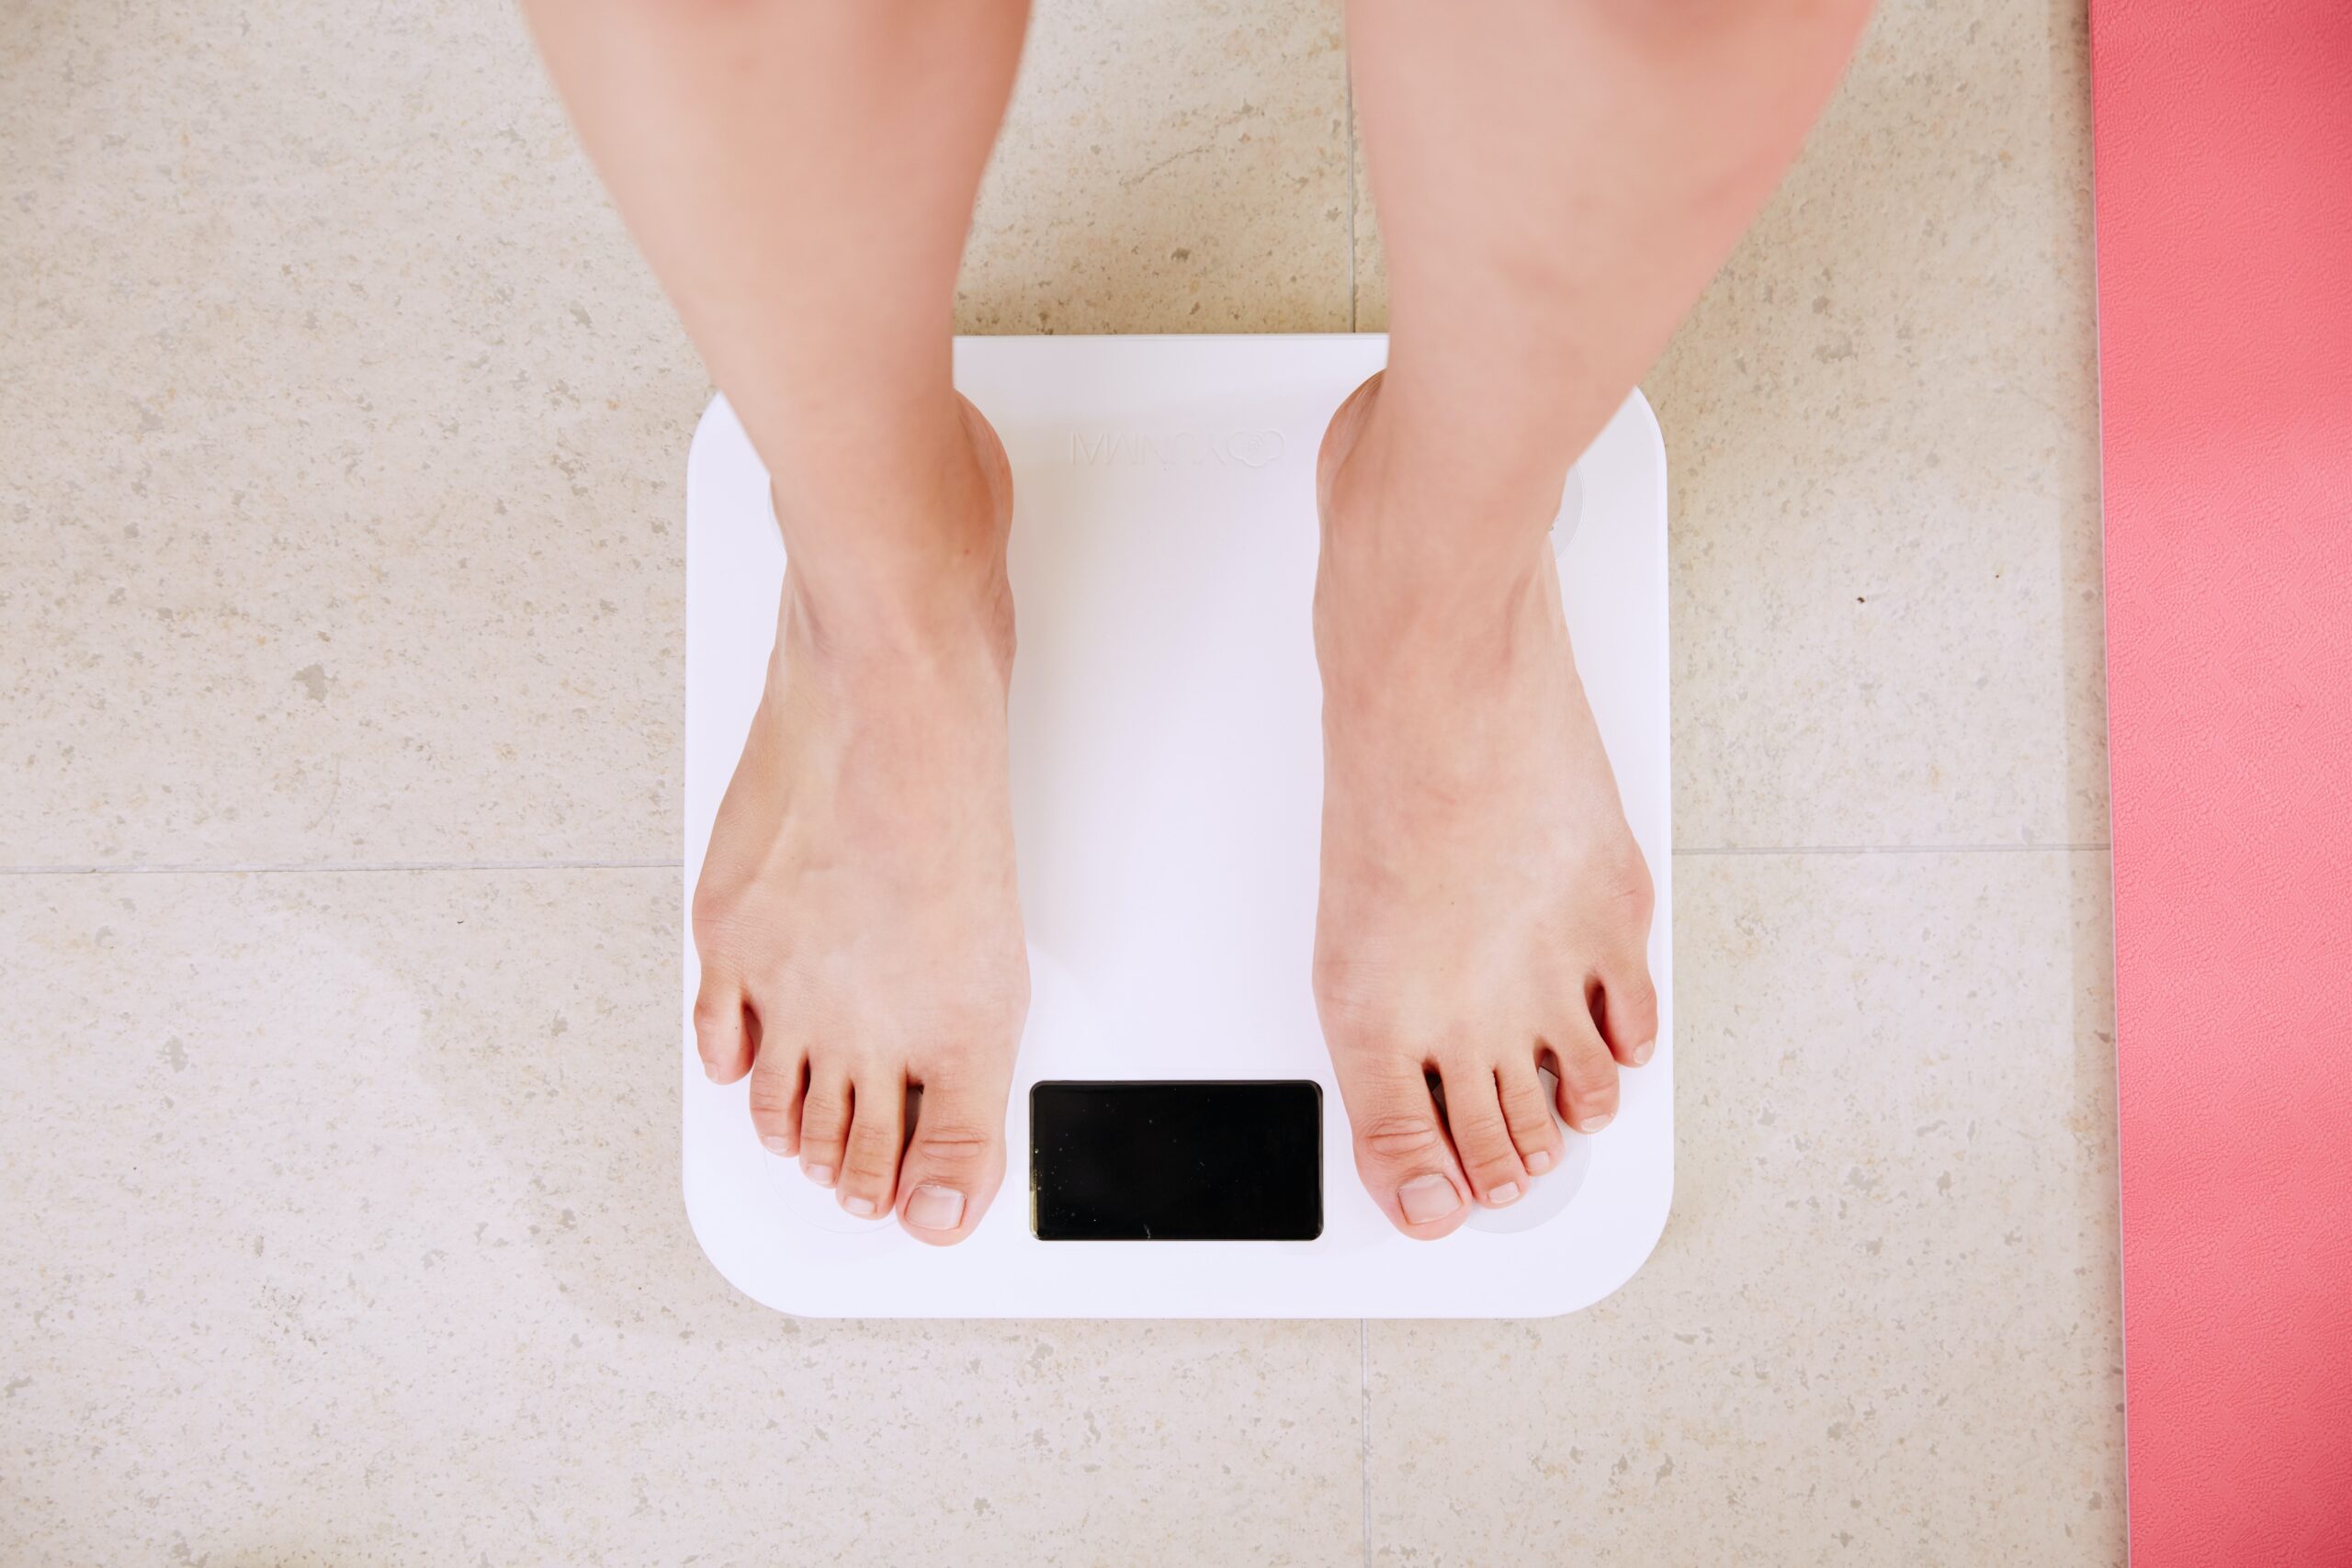 Taxa de obesidade cresce entre baianos e exige cuidados com a saúde